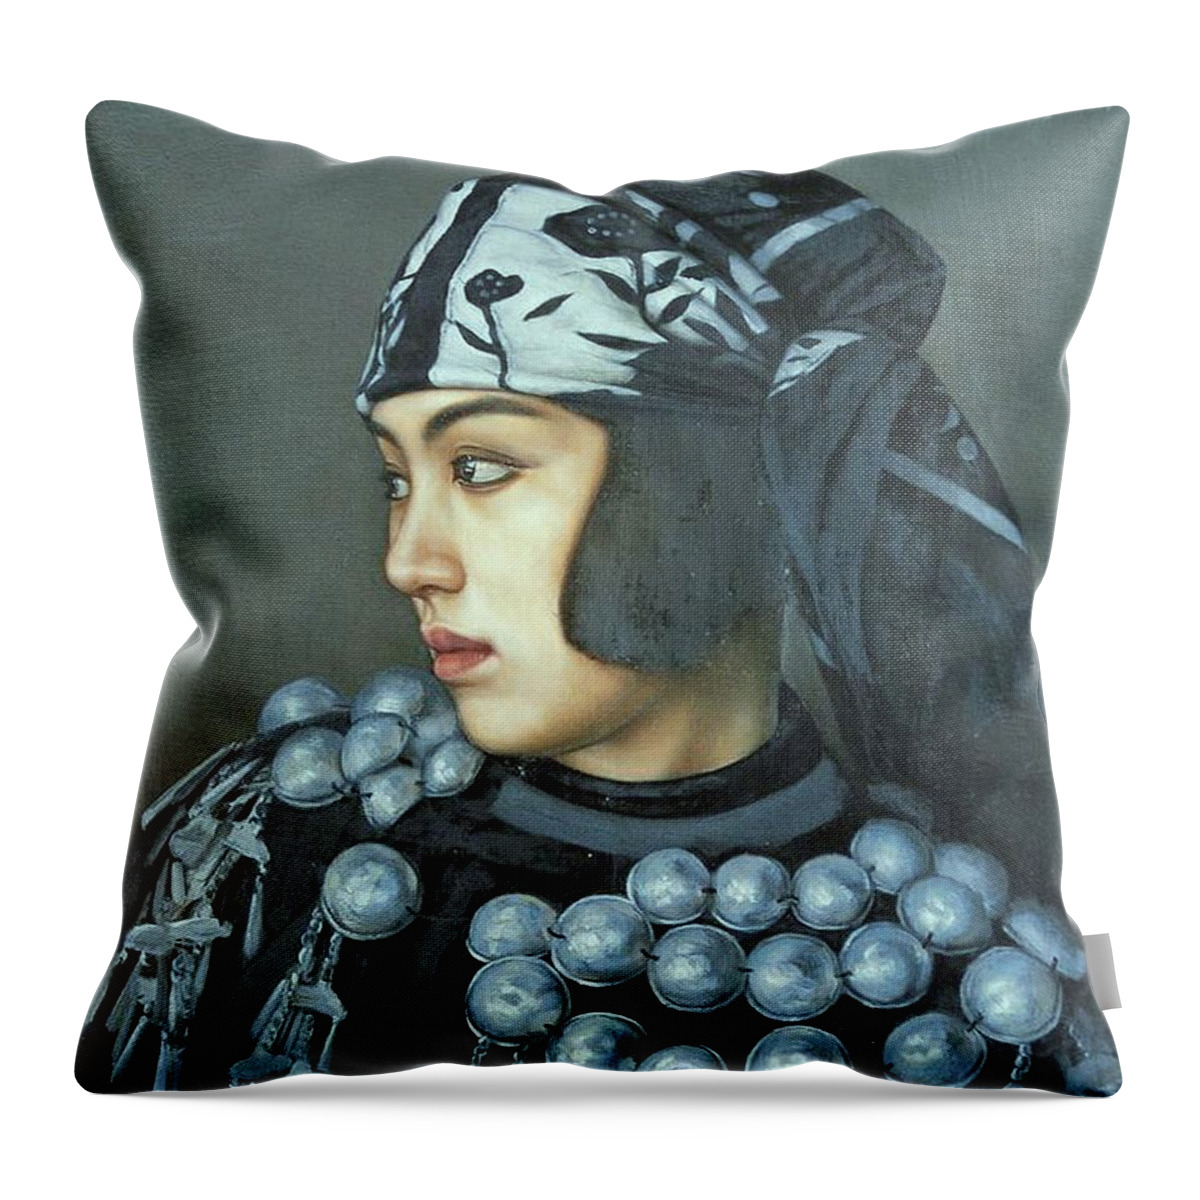  Throw Pillow featuring the painting Jingpo Girl by Zheng Li